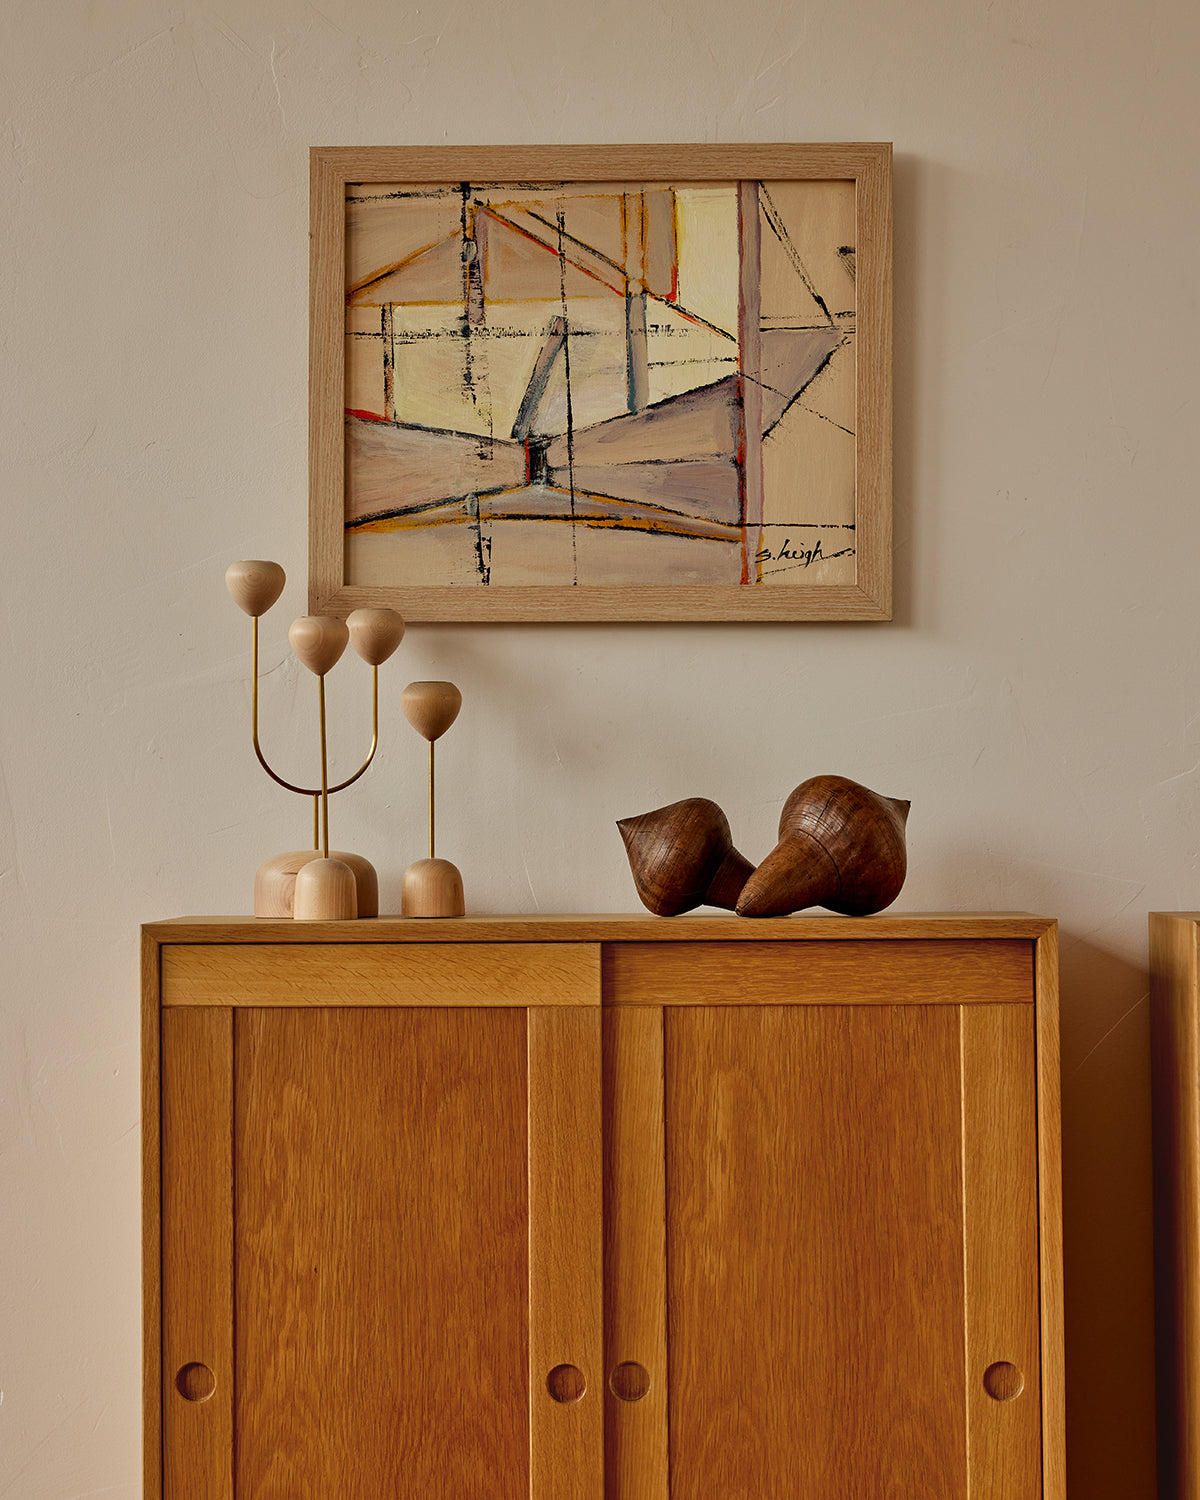 Danish Oak Cabinets by Bernt